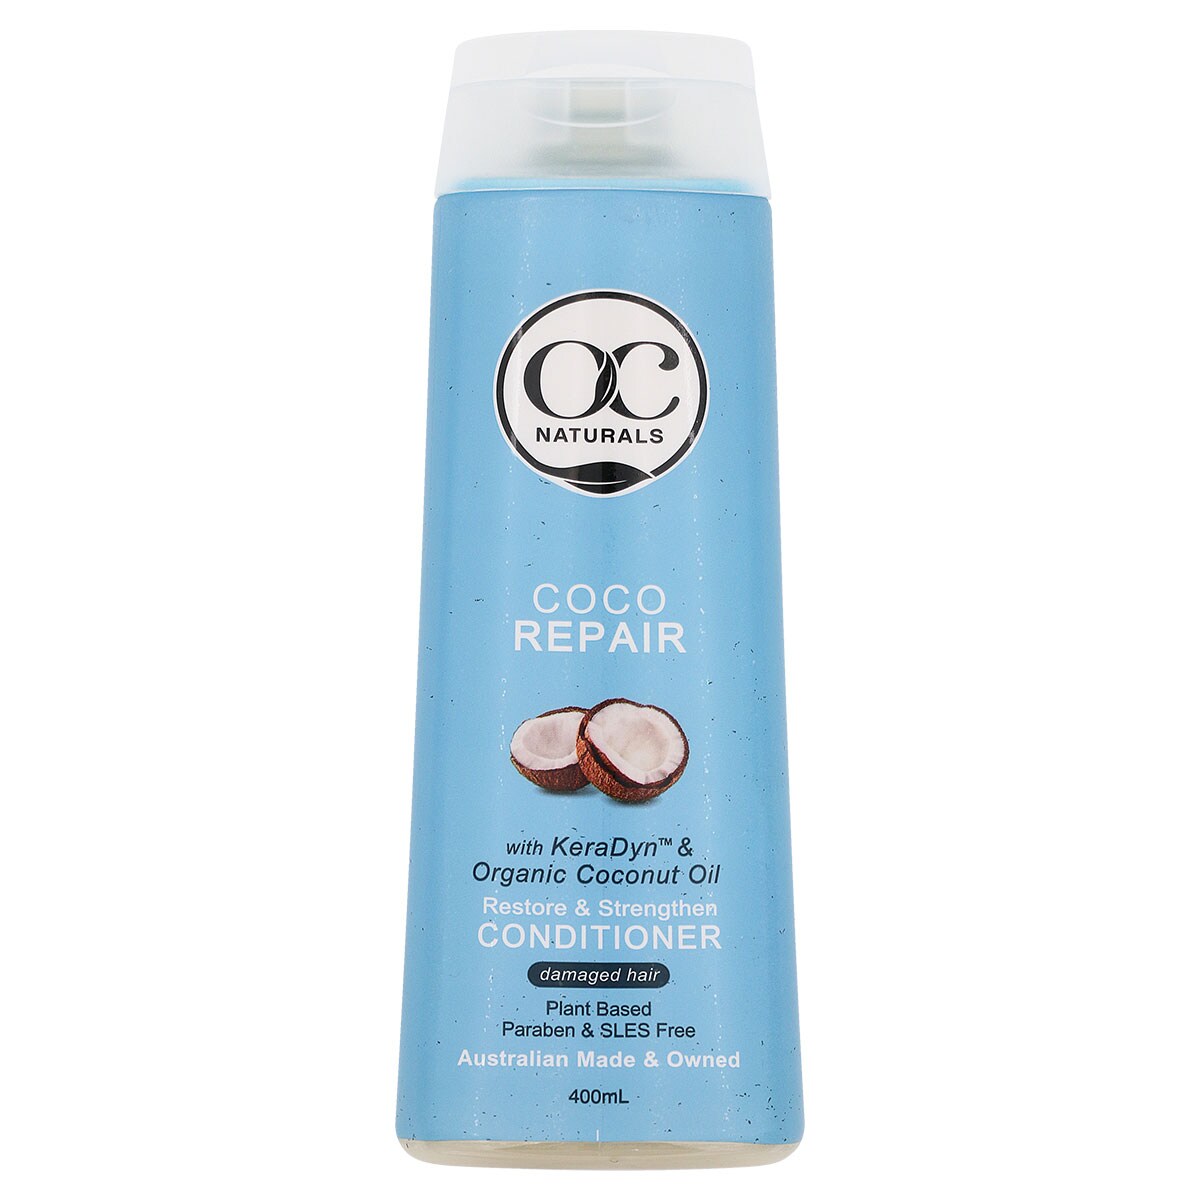 OC Naturals Conditioner Coco Repair 400ml